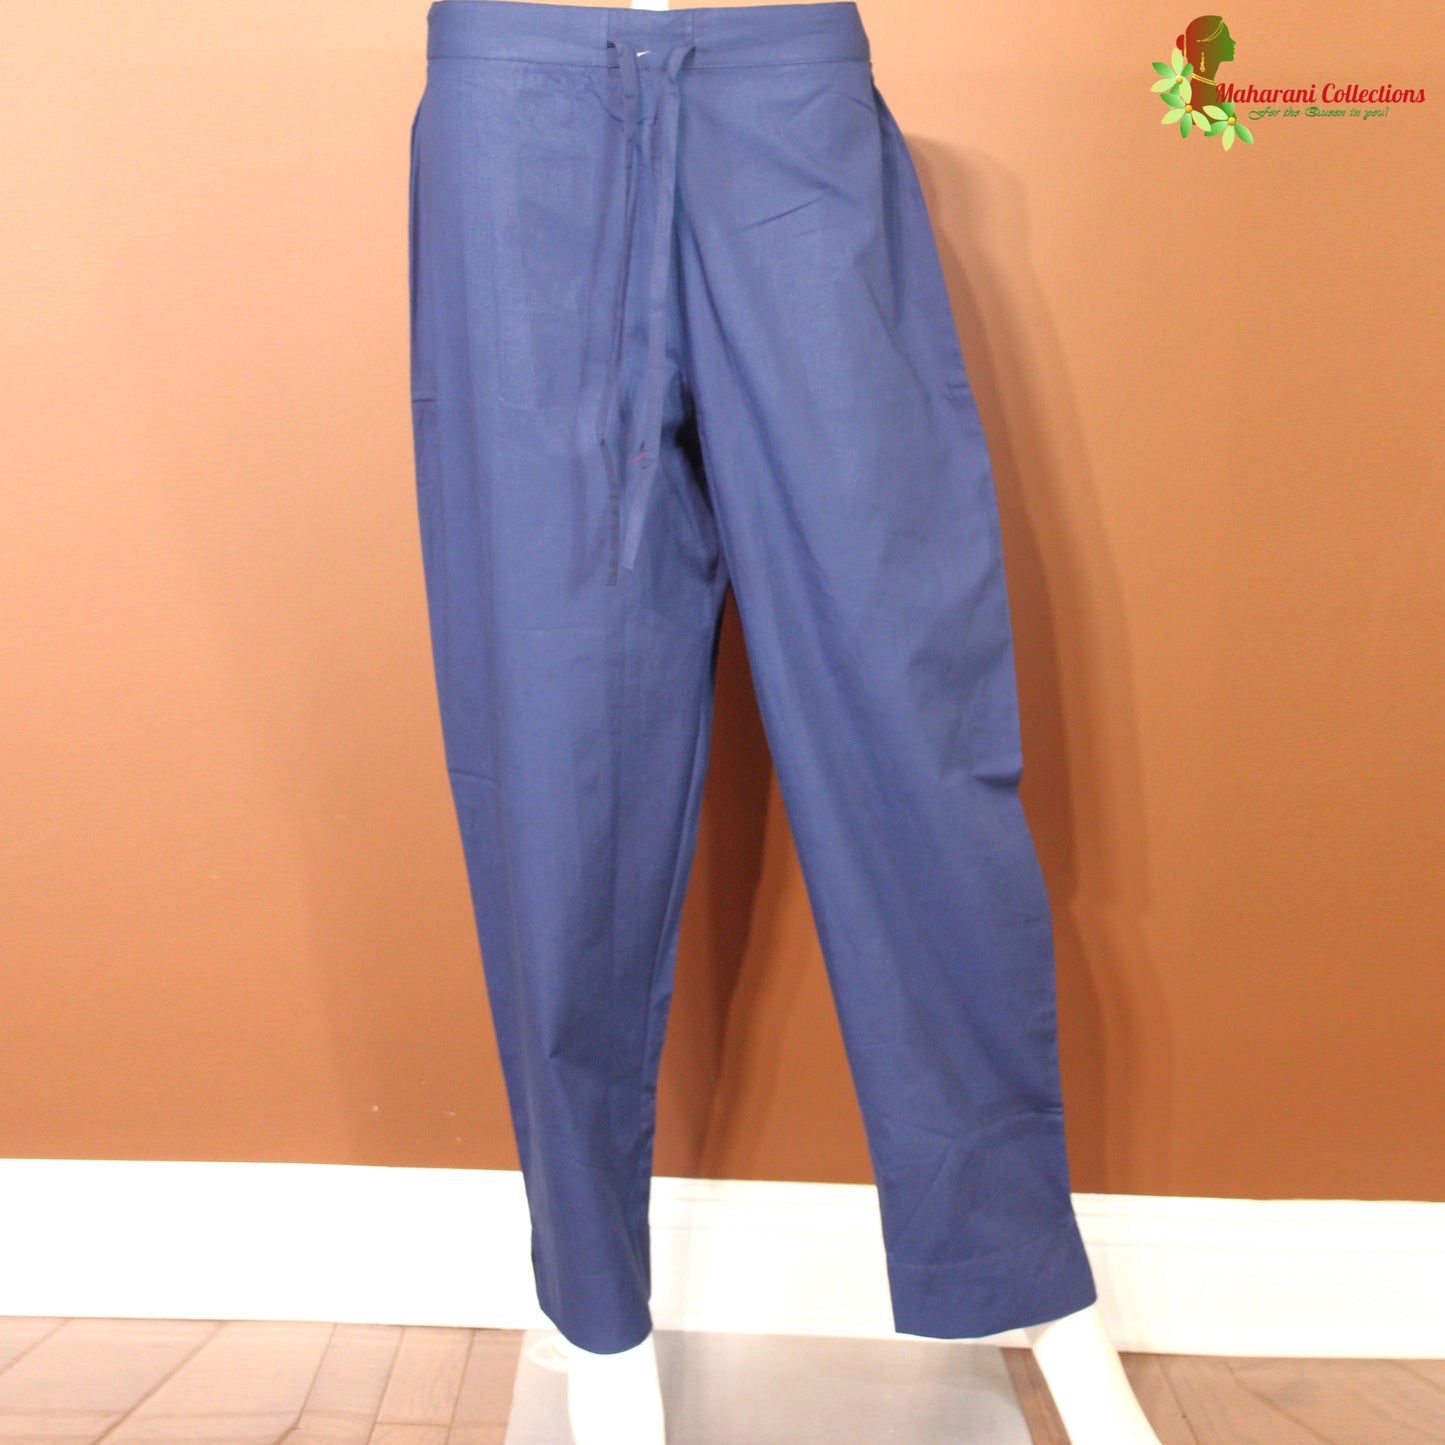 Maharani's Pure Cotton Pant Suit - Navy Blue (S)